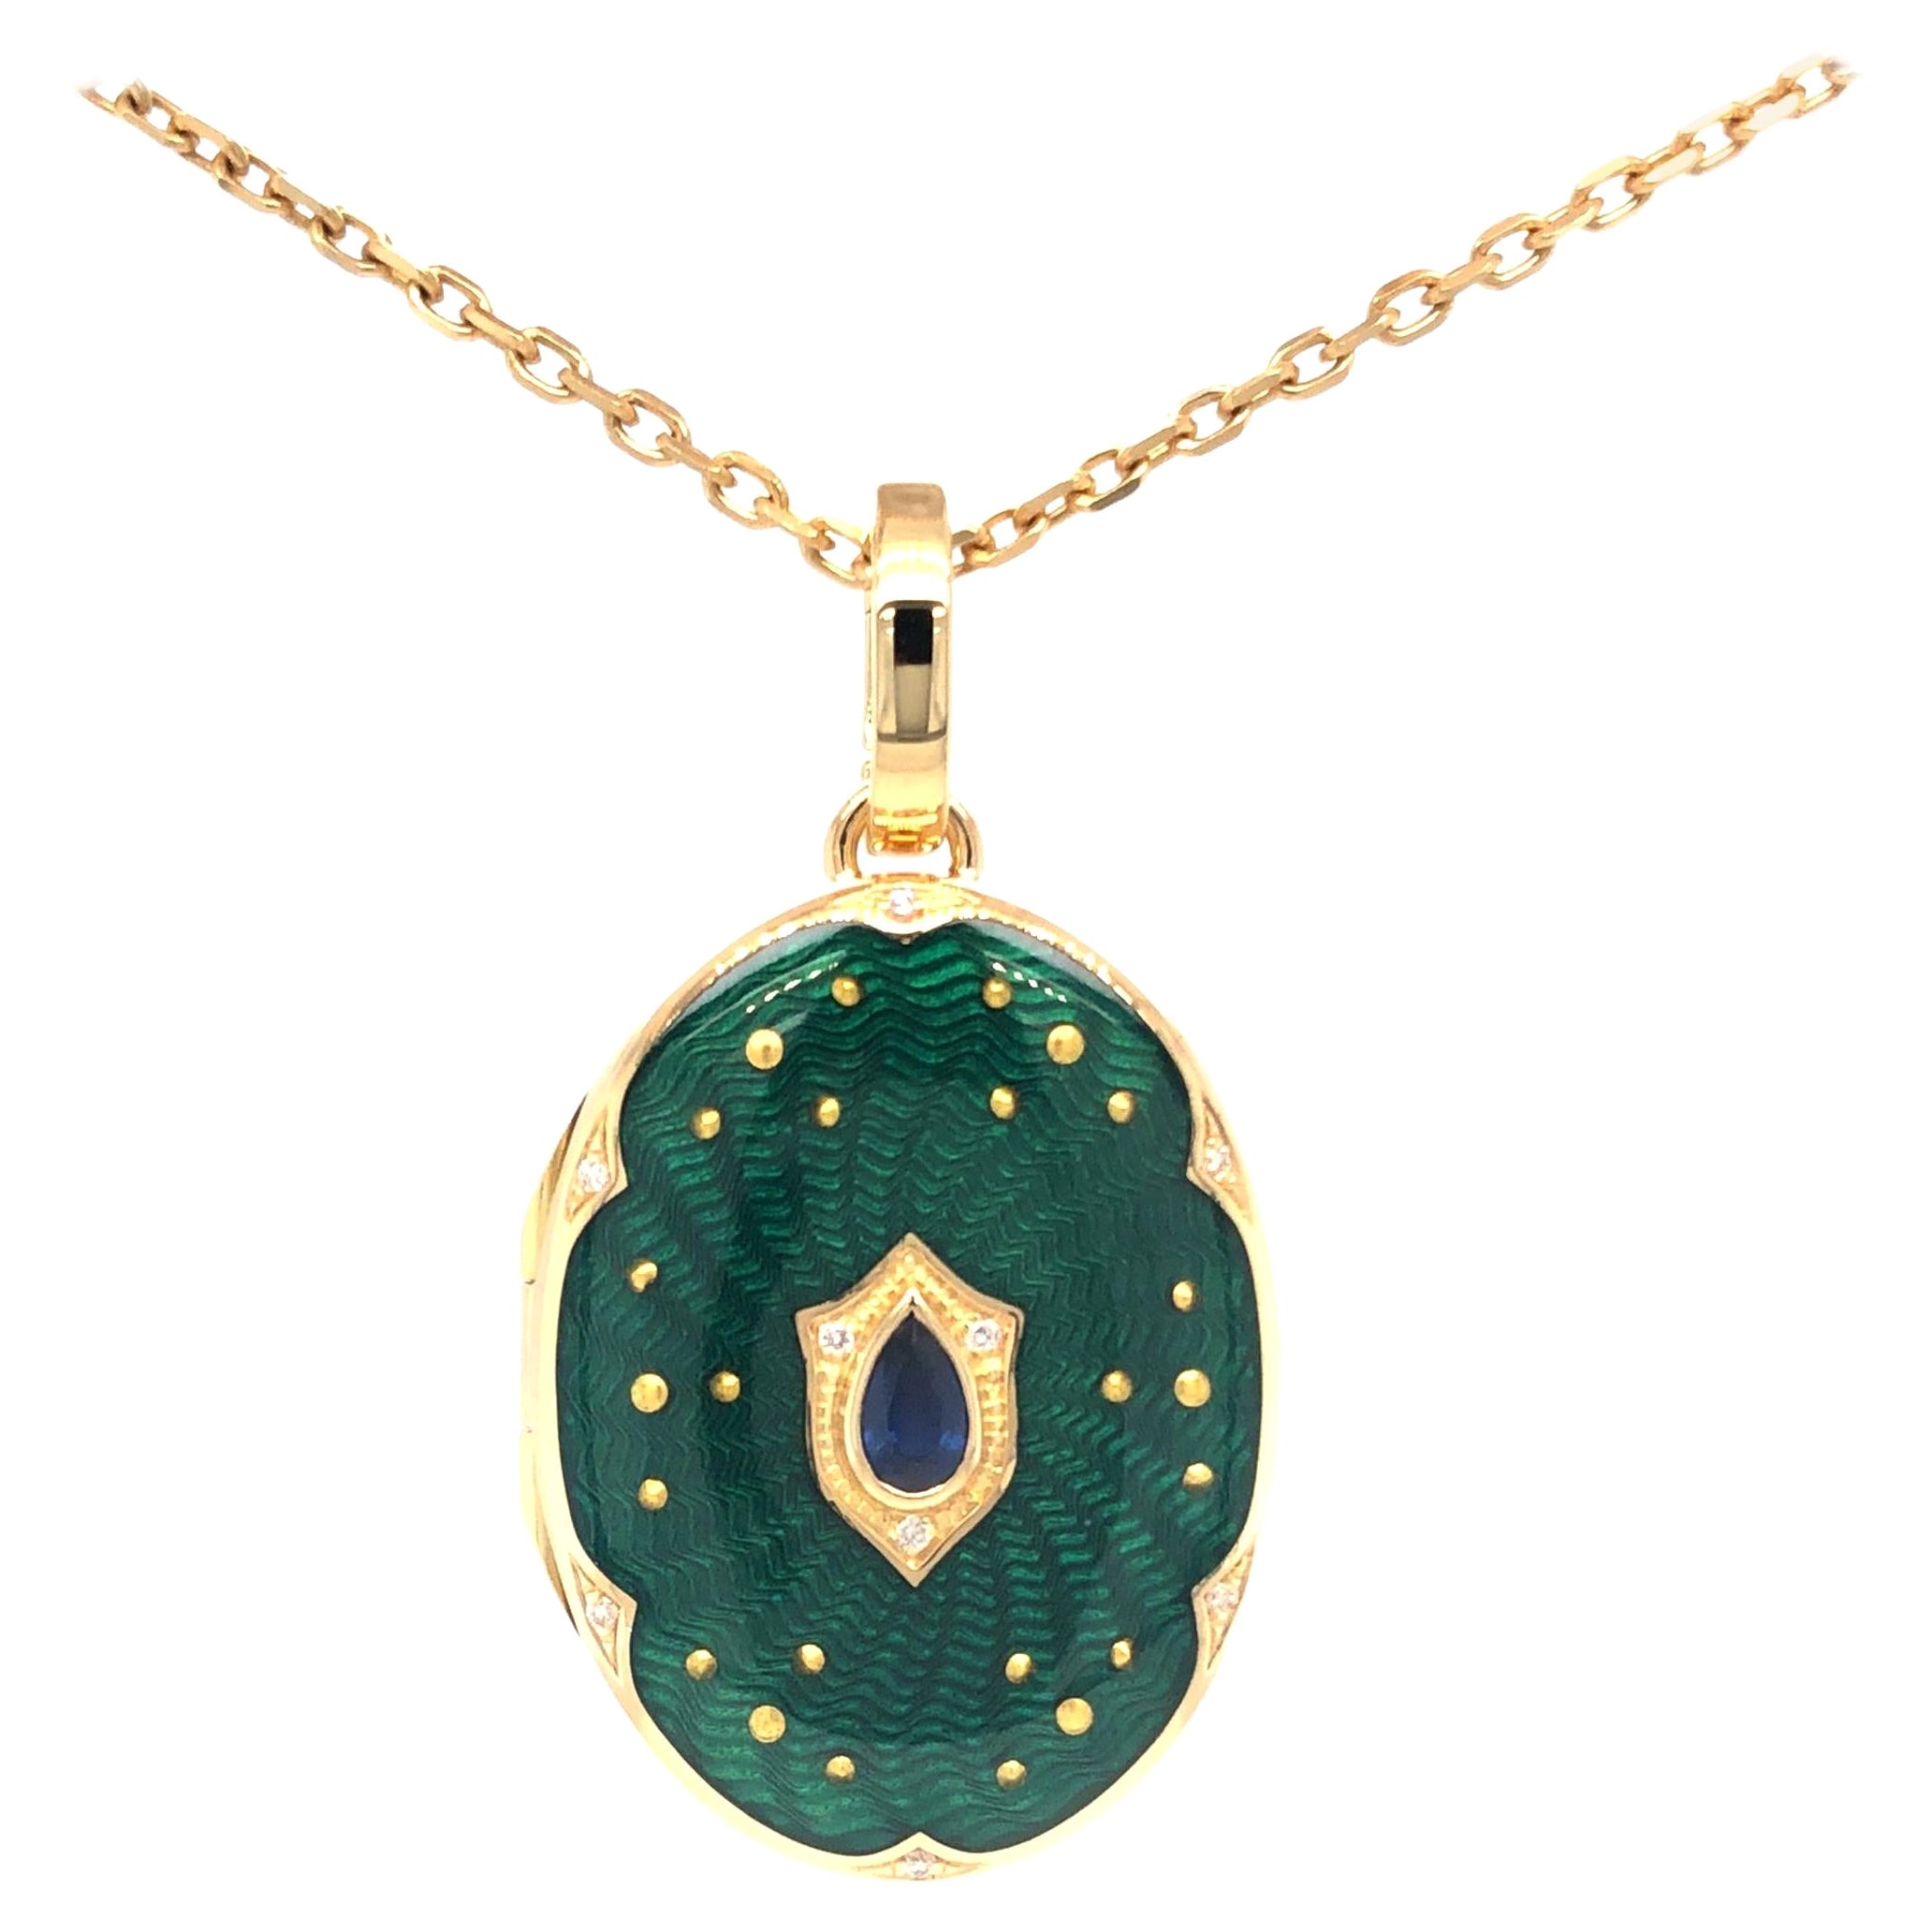 Oval Locket Pendant Necklace 18k YG Green Guilloche Enamel Sapphire 27 x 17 mm